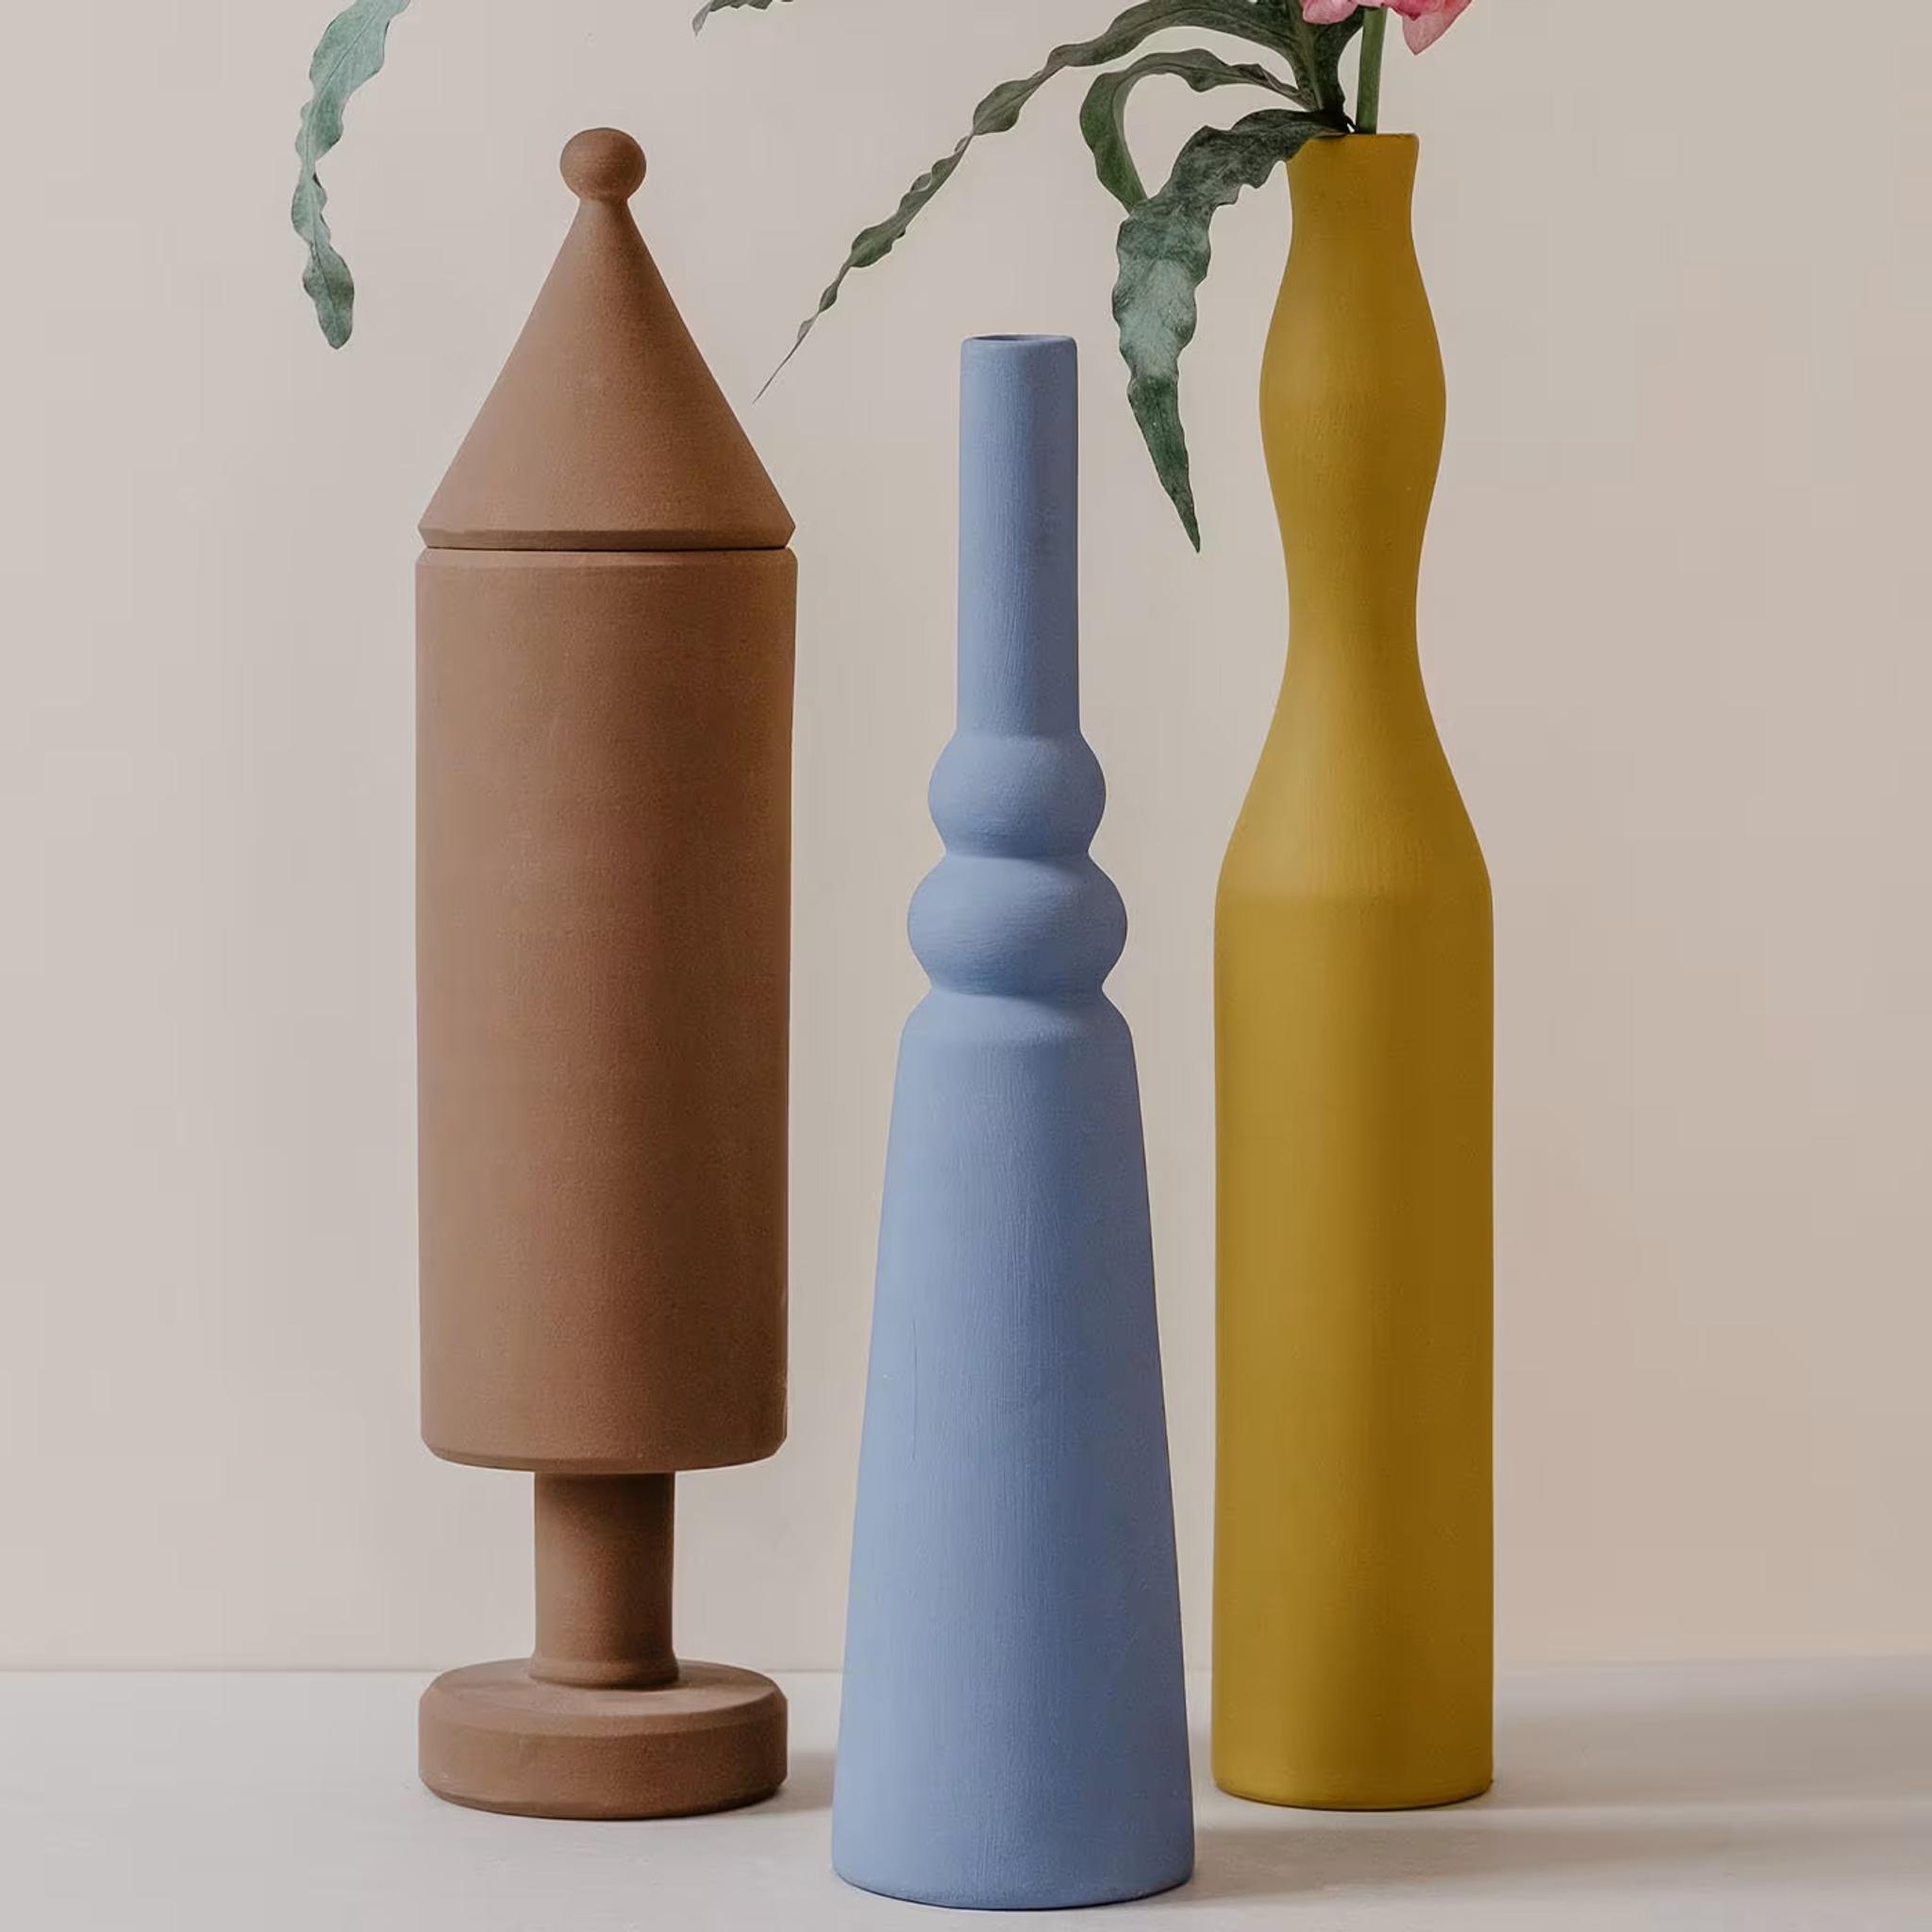 Ceramic Decorative Bottles